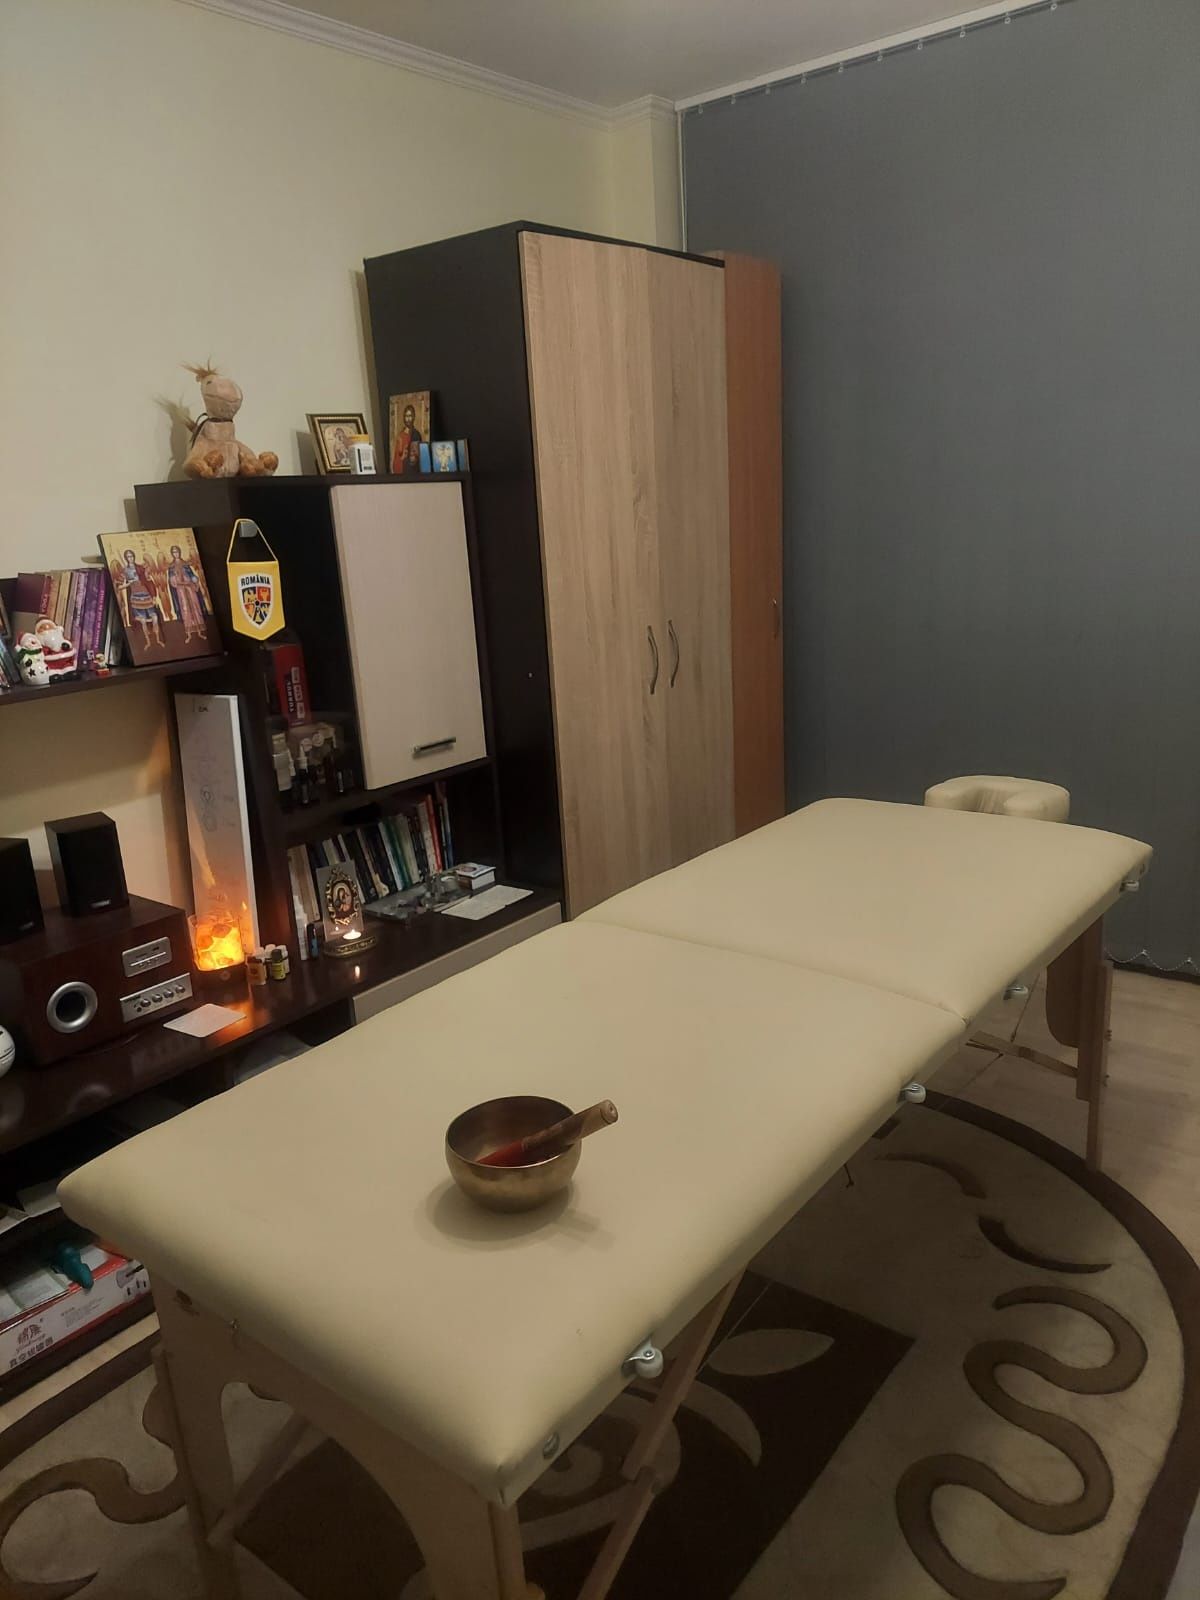 Masaj Terapeutic/Sportiv/relaxare; Kinetoterapie în Sector 6 / Plaza